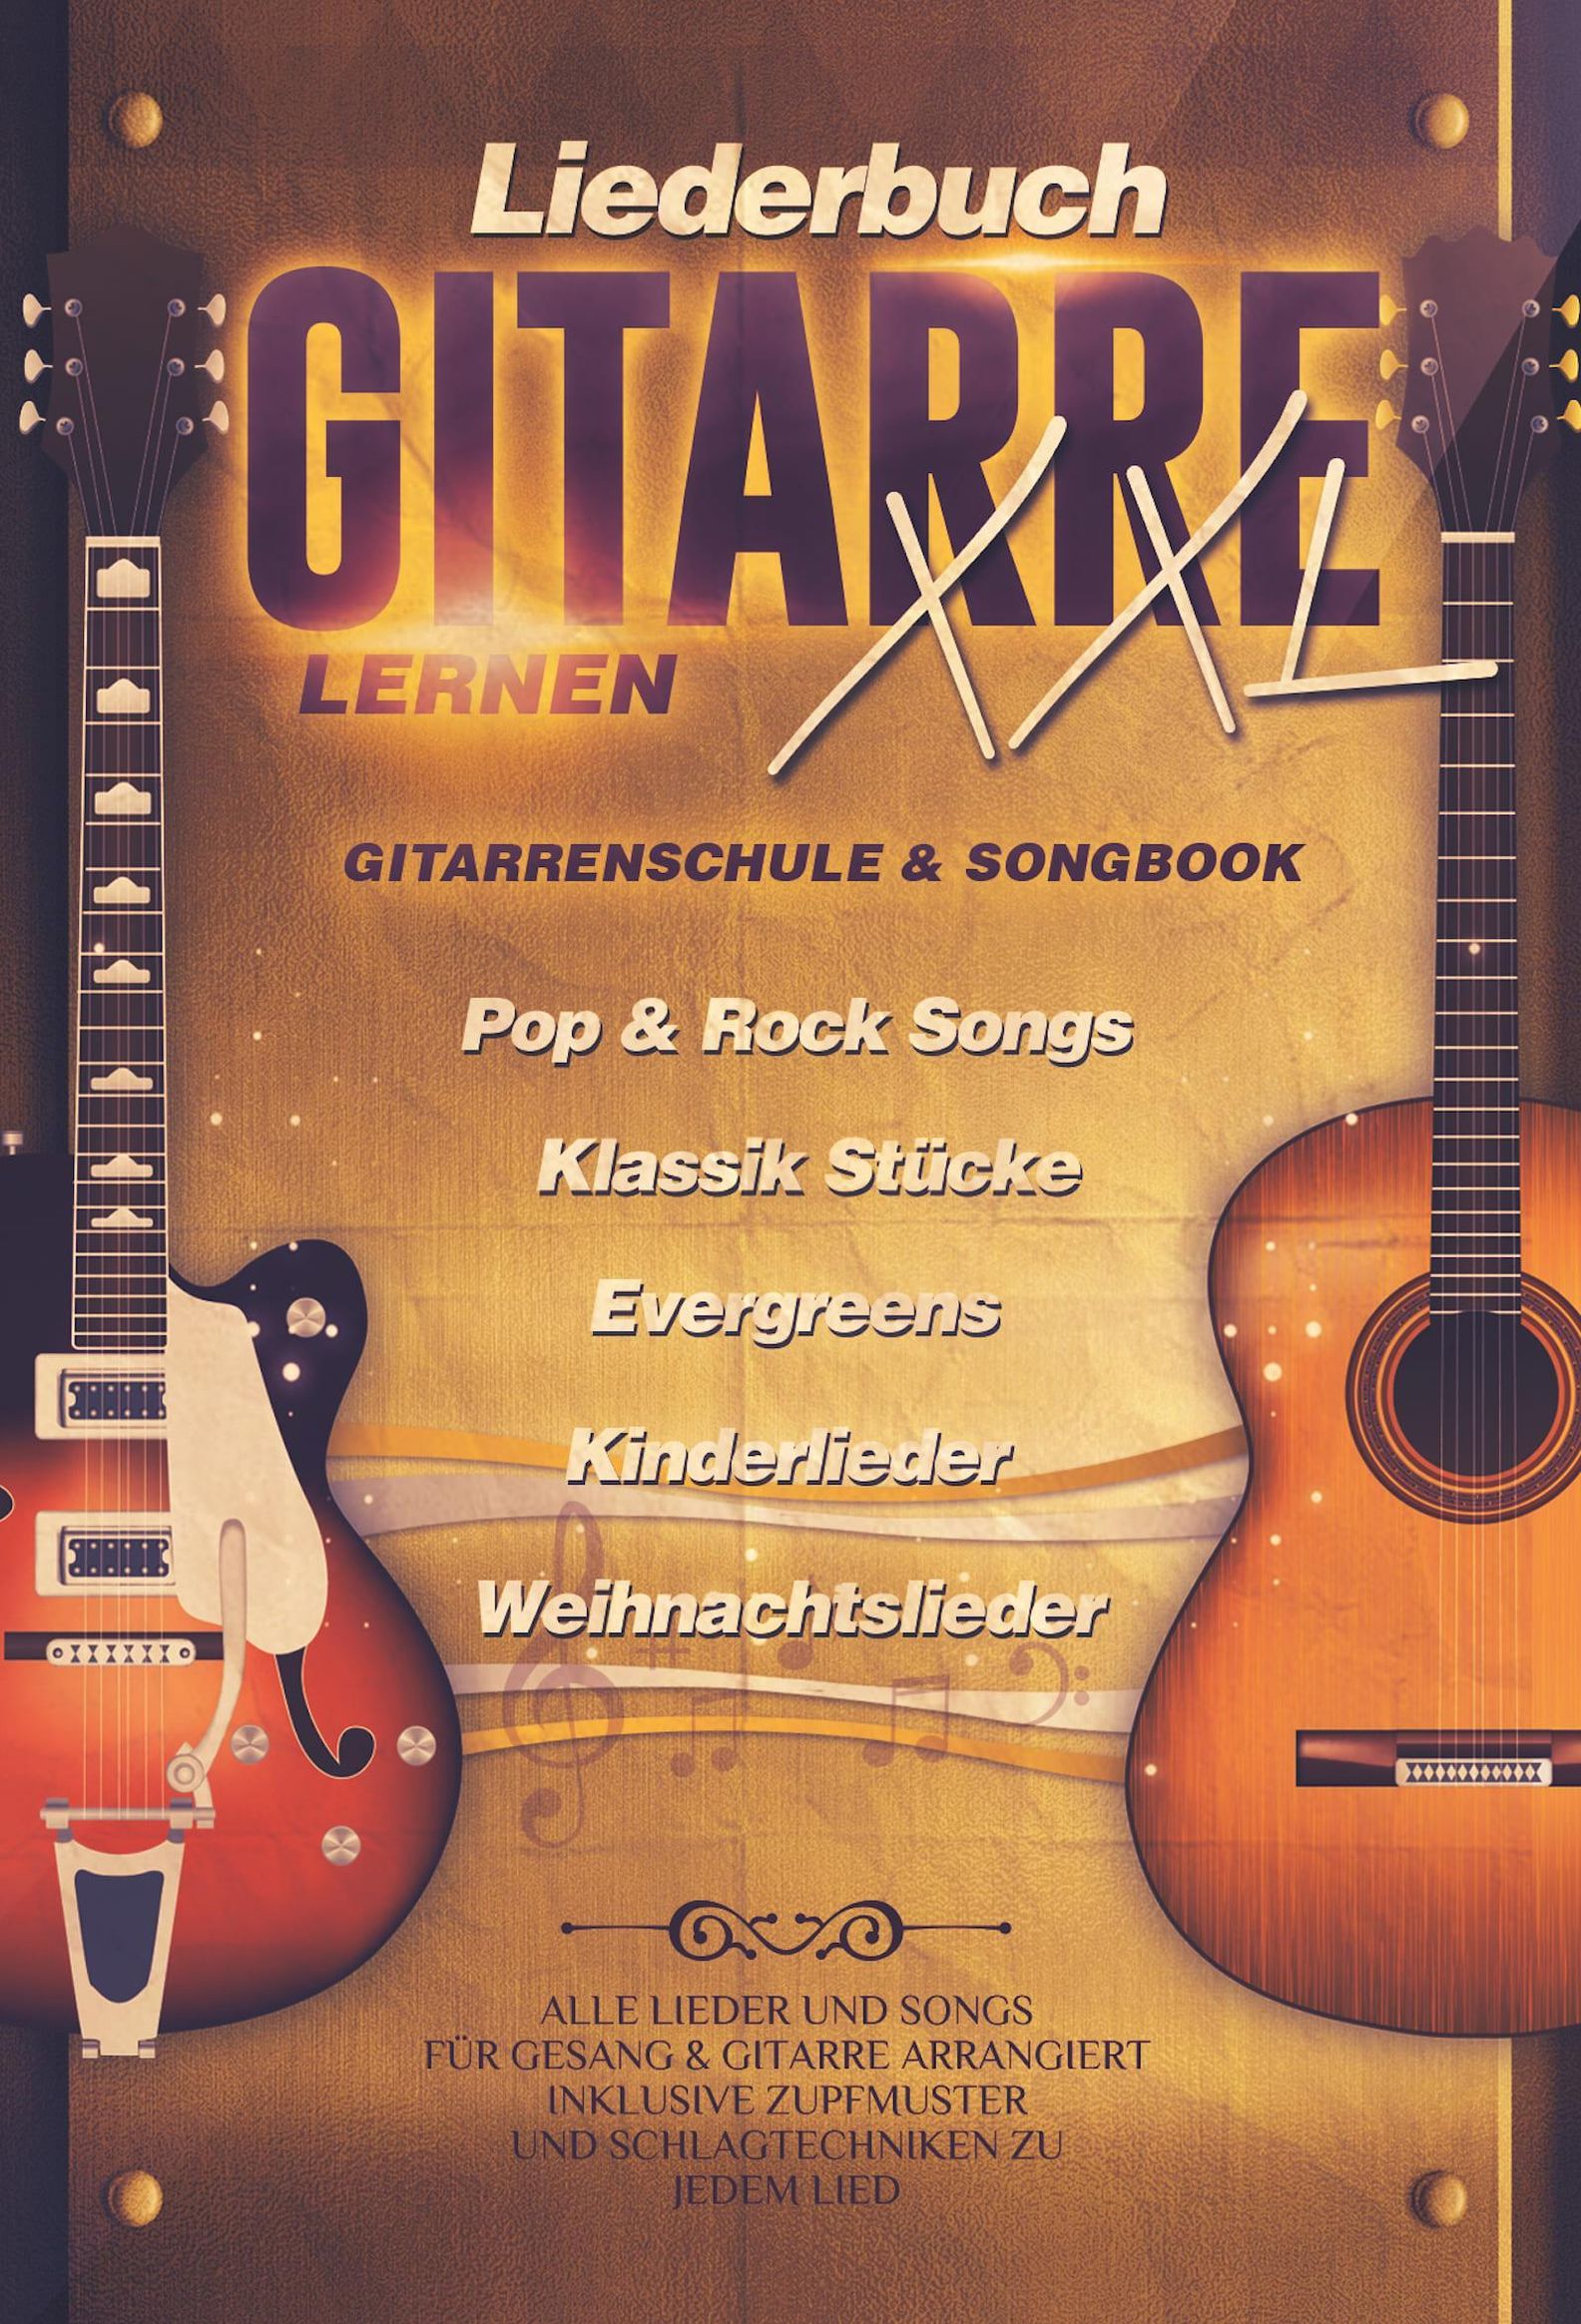 Liederbuch Gitarre Lernen XXL - Gitarrenschule & Songbook in Einem, Pop &  Rock Songs, Klassik Stücke, Evergreens, Kinderlieder, Weihnachtslieder |  Weltbild.at